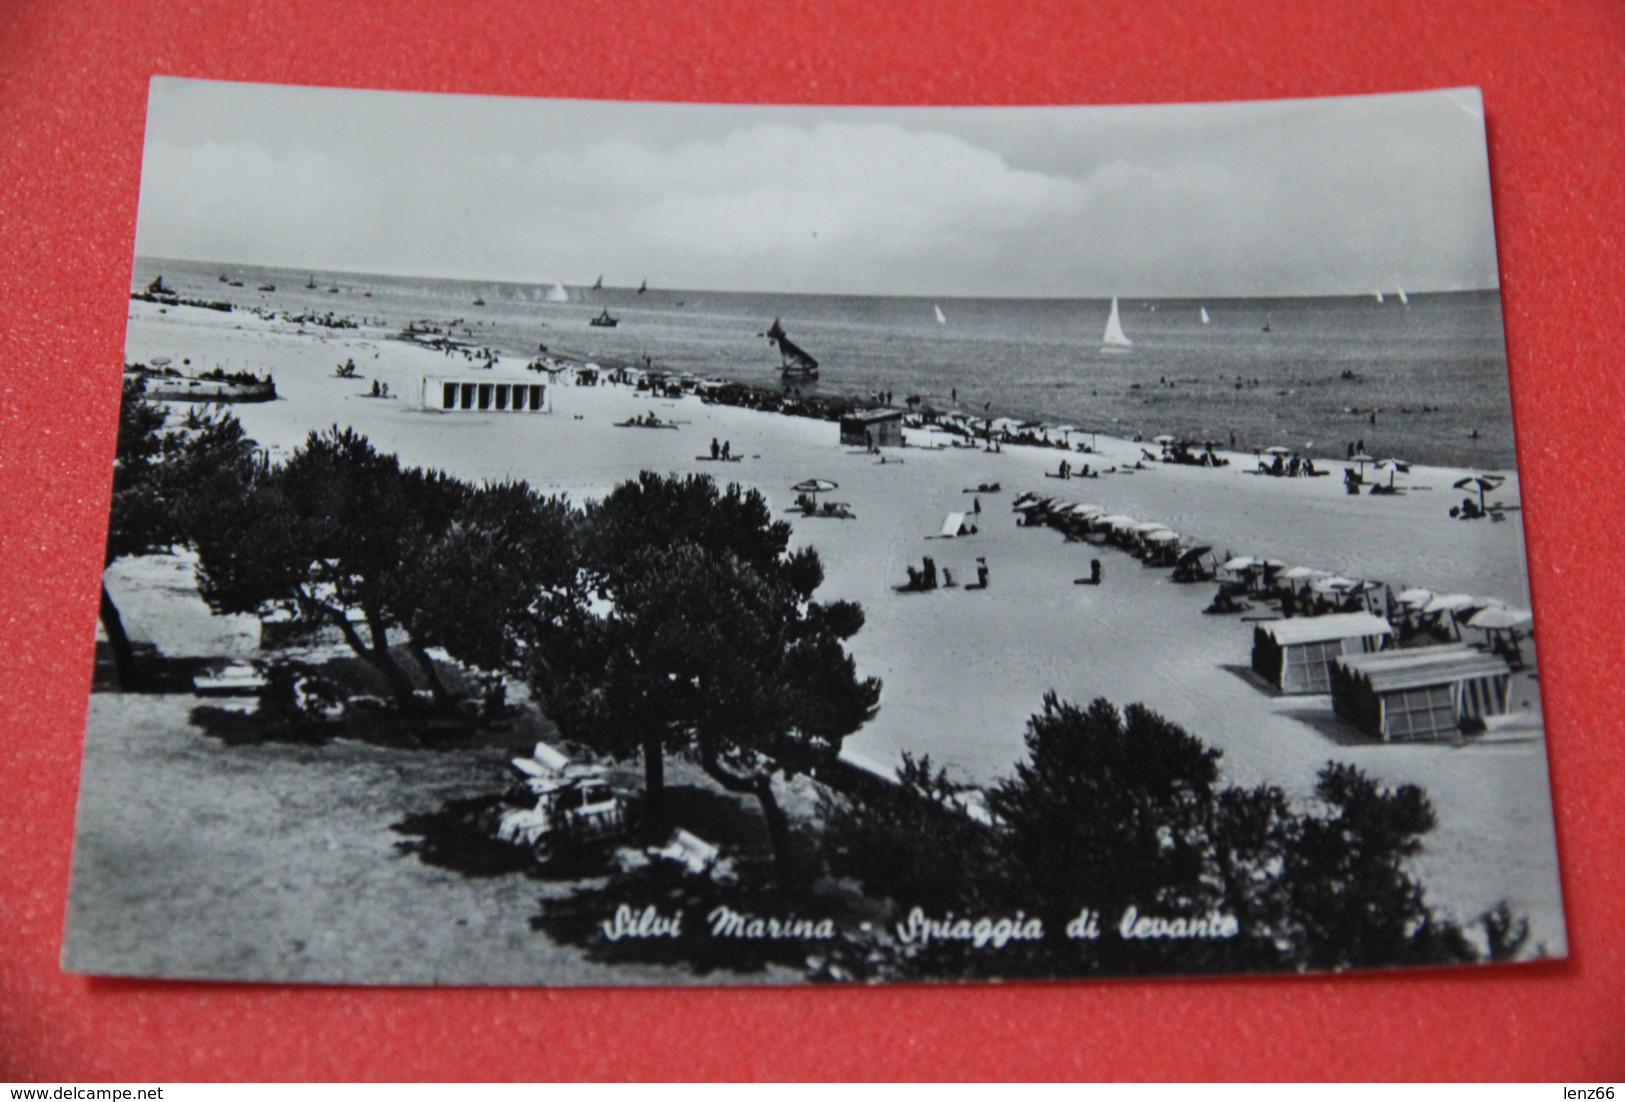 Teramo Silvi Marina La Spiaggia Di Levante 1962 - Teramo